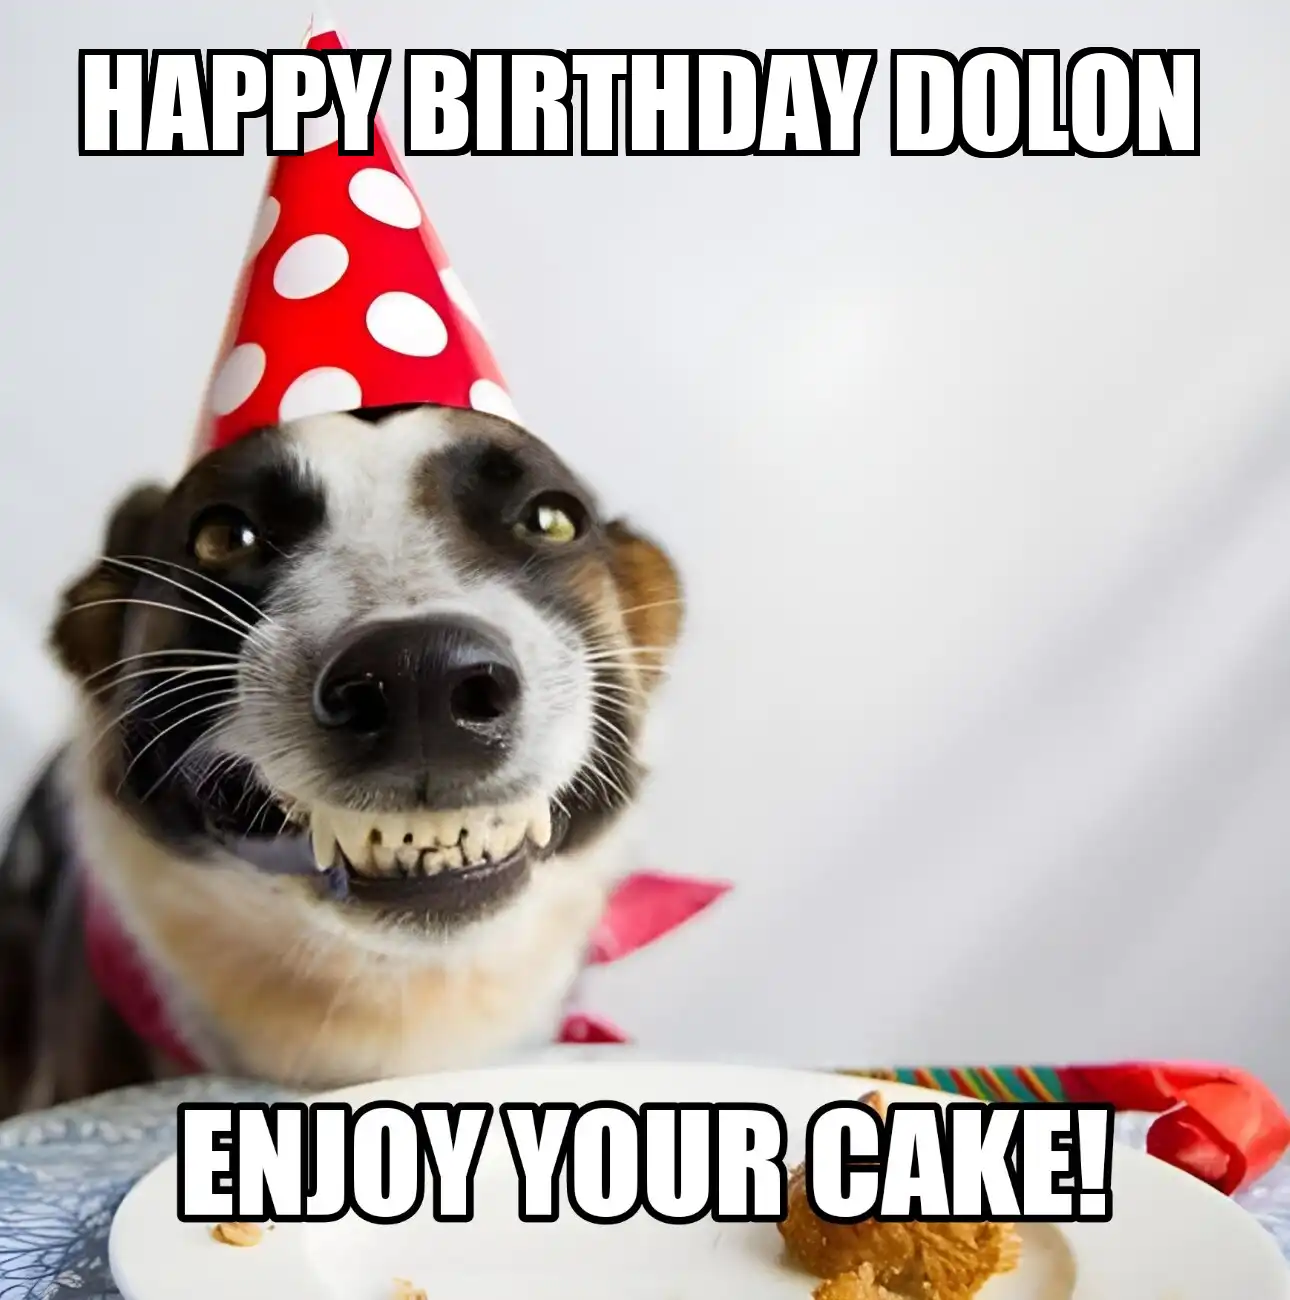 Happy Birthday Dolon Enjoy Your Cake Dog Meme